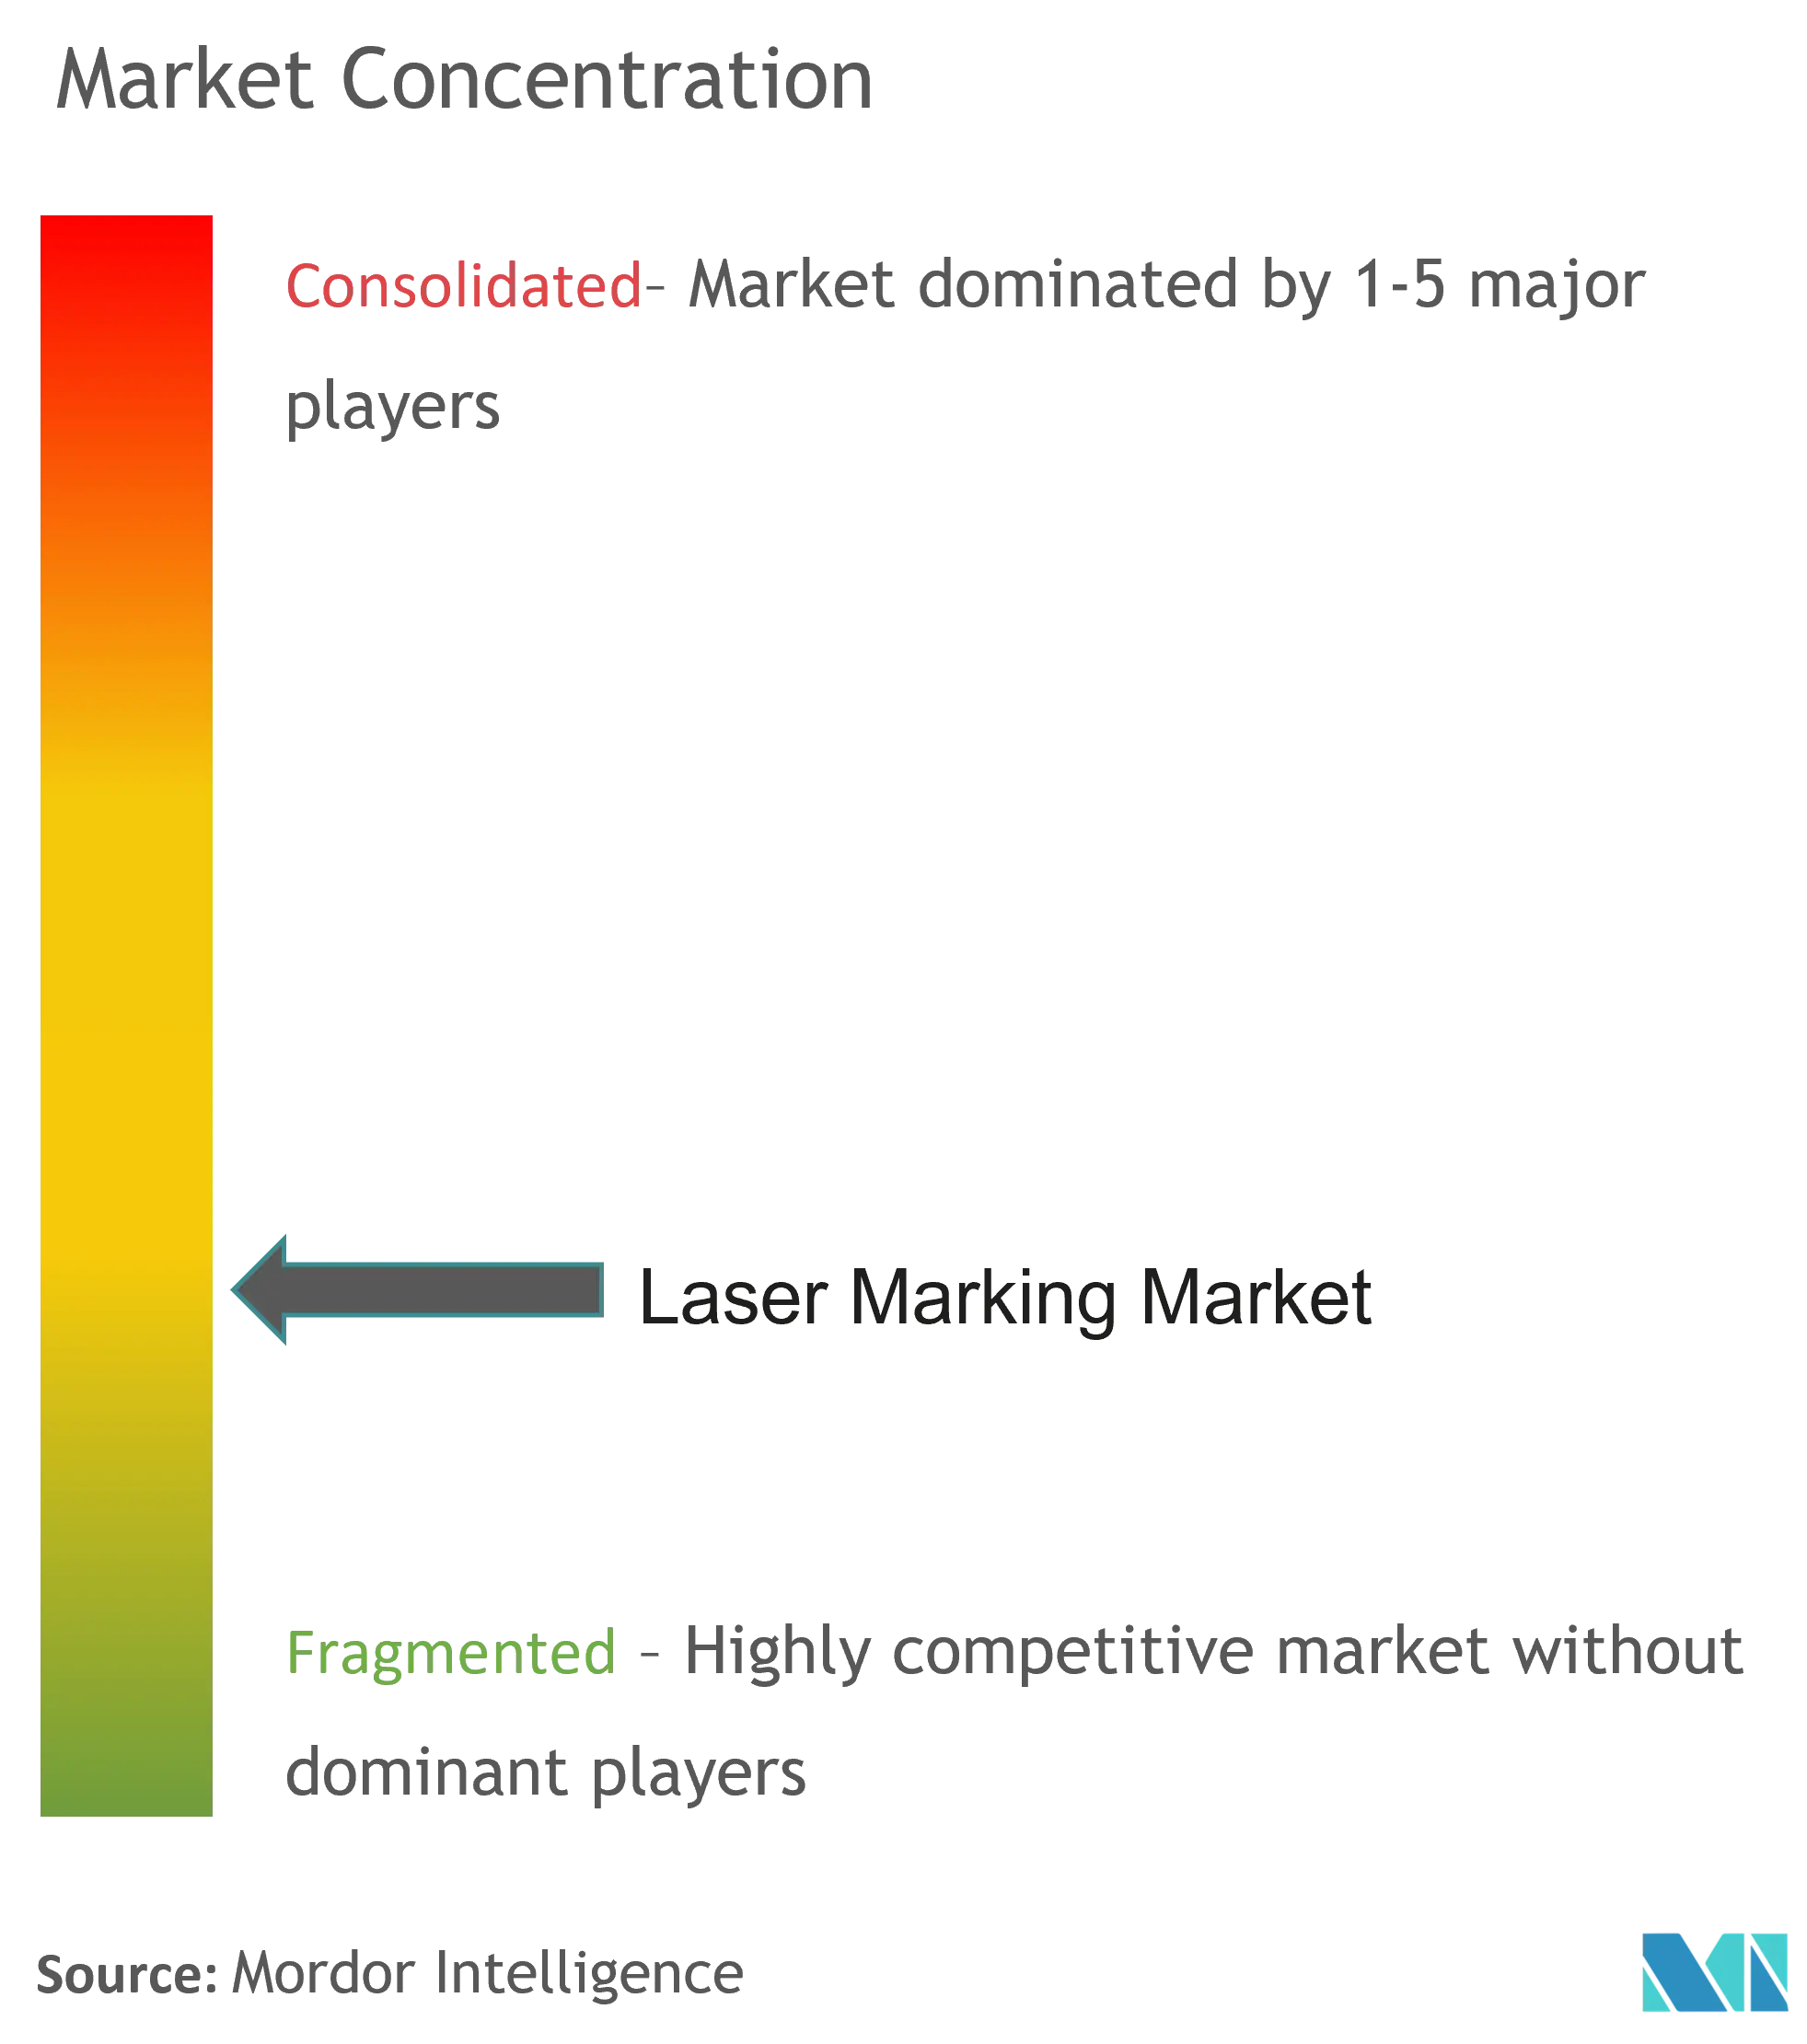 Laser Marking Market - Market Concentration.png